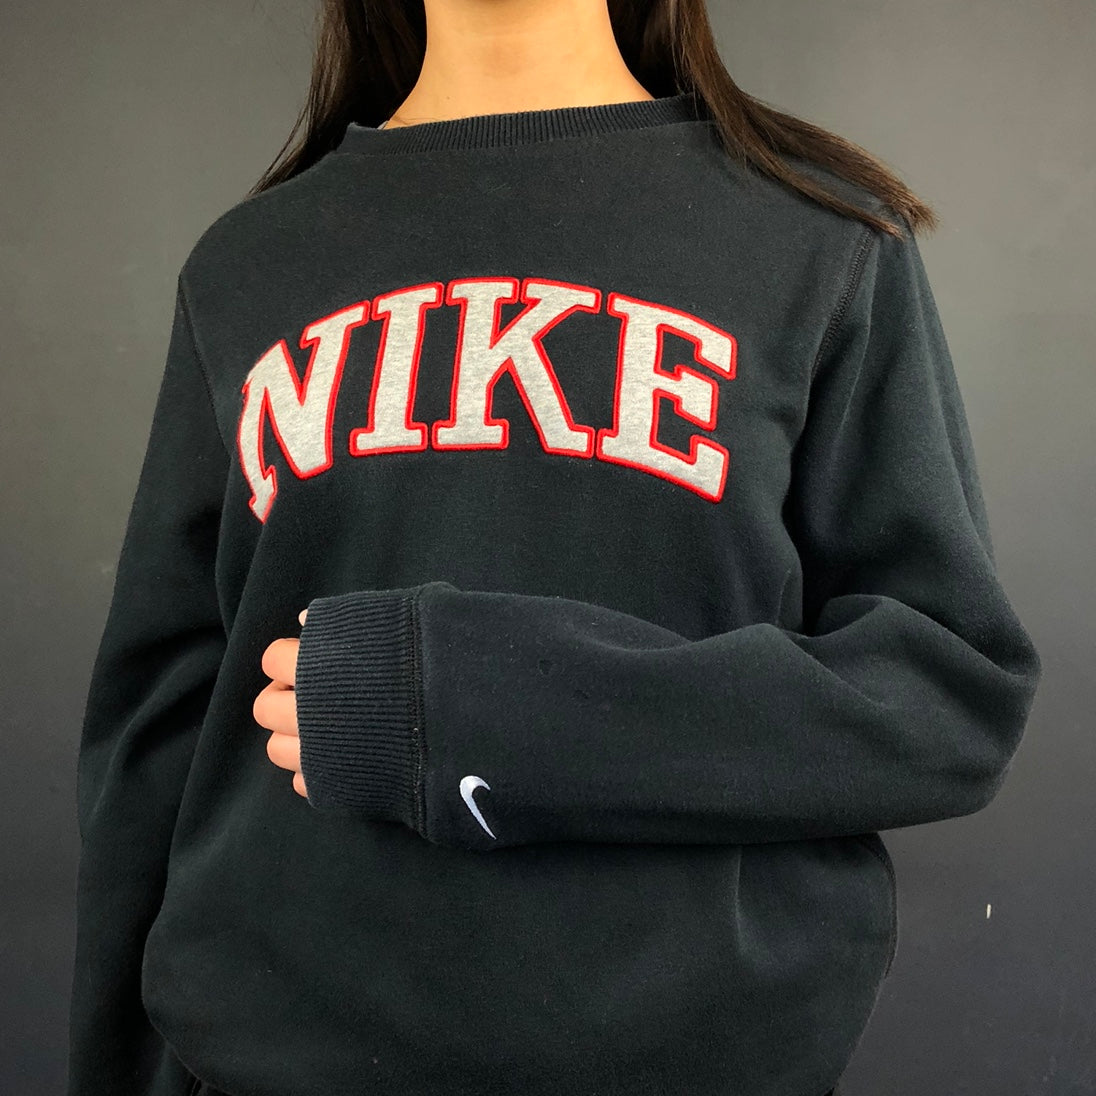 Vintage Nike Spellout Sweatshirt in Black